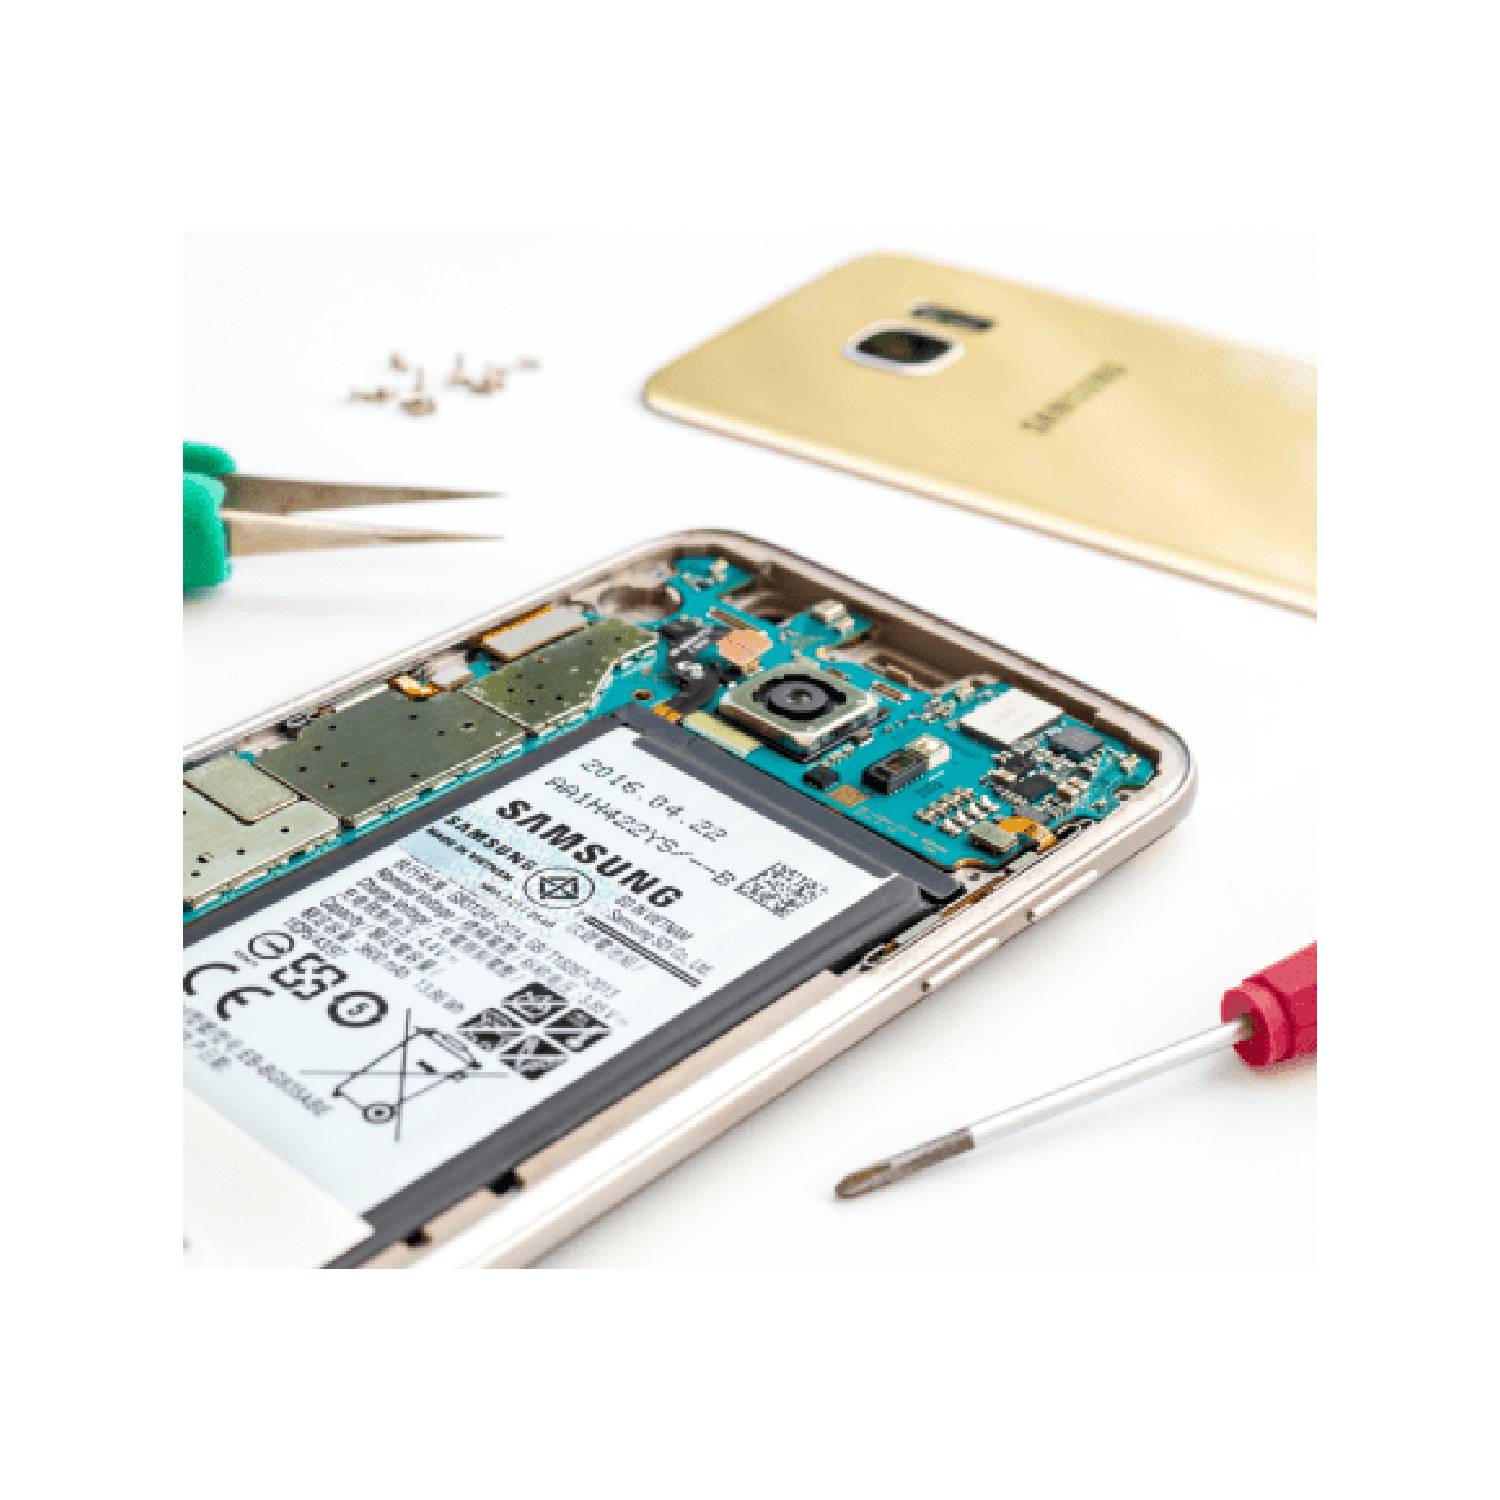 Samsung Repair